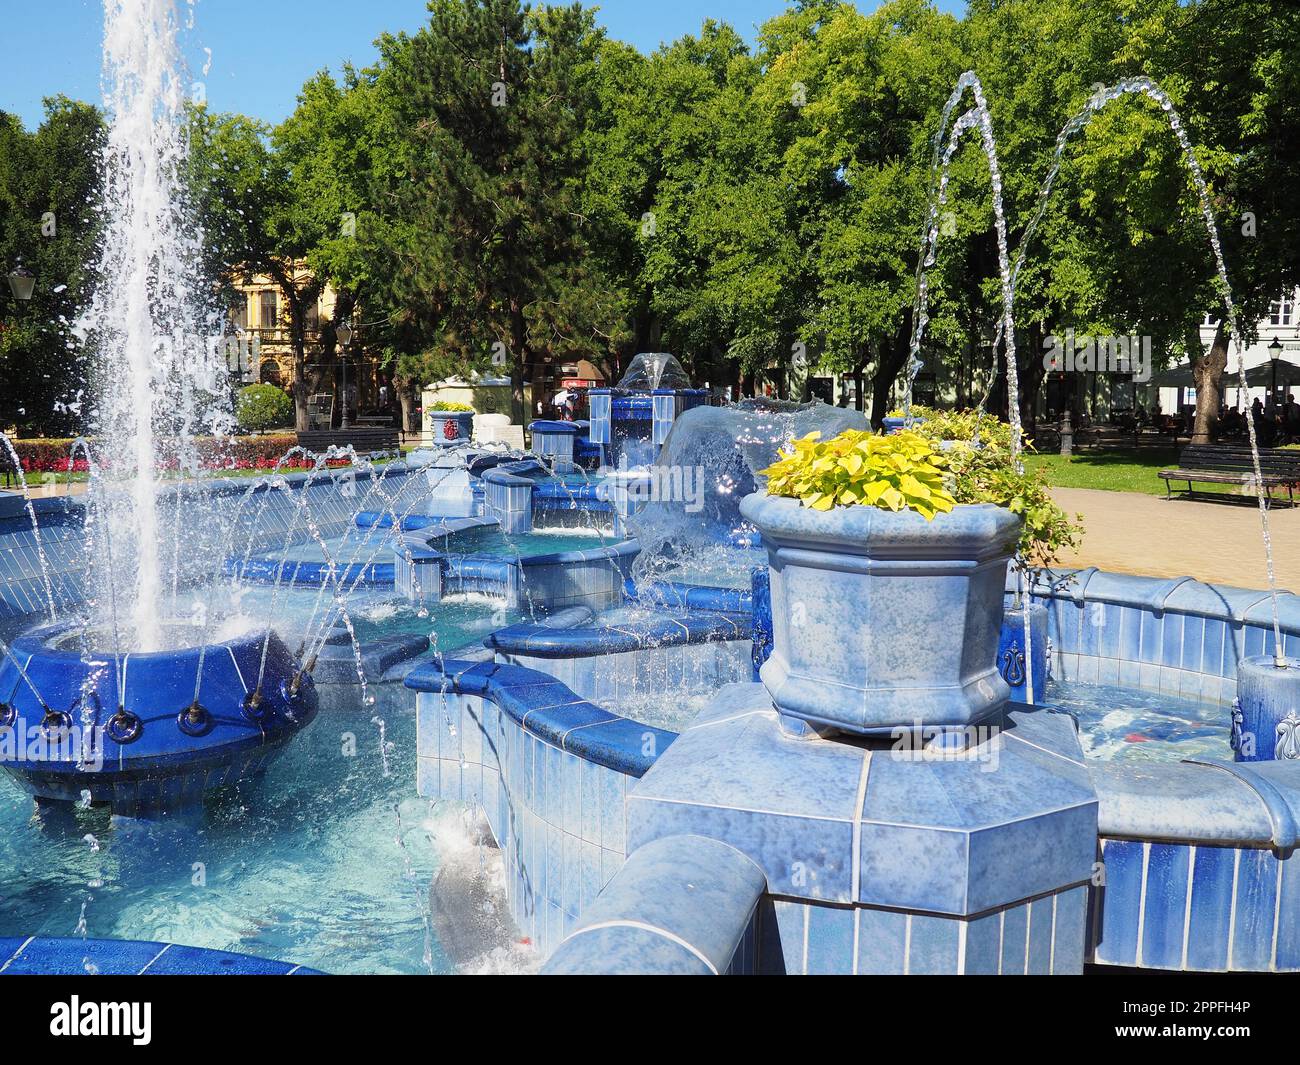 Subotica, Serbien 12. September 2021. Blauer Brunnen auf dem Platz neben dem Rathaus. Blaue Keramikteile mit Monogrammen. Ein funktionierender Brunnen mit Spritzwasser. Sommersonnentag am blauen Wasser Stockfoto